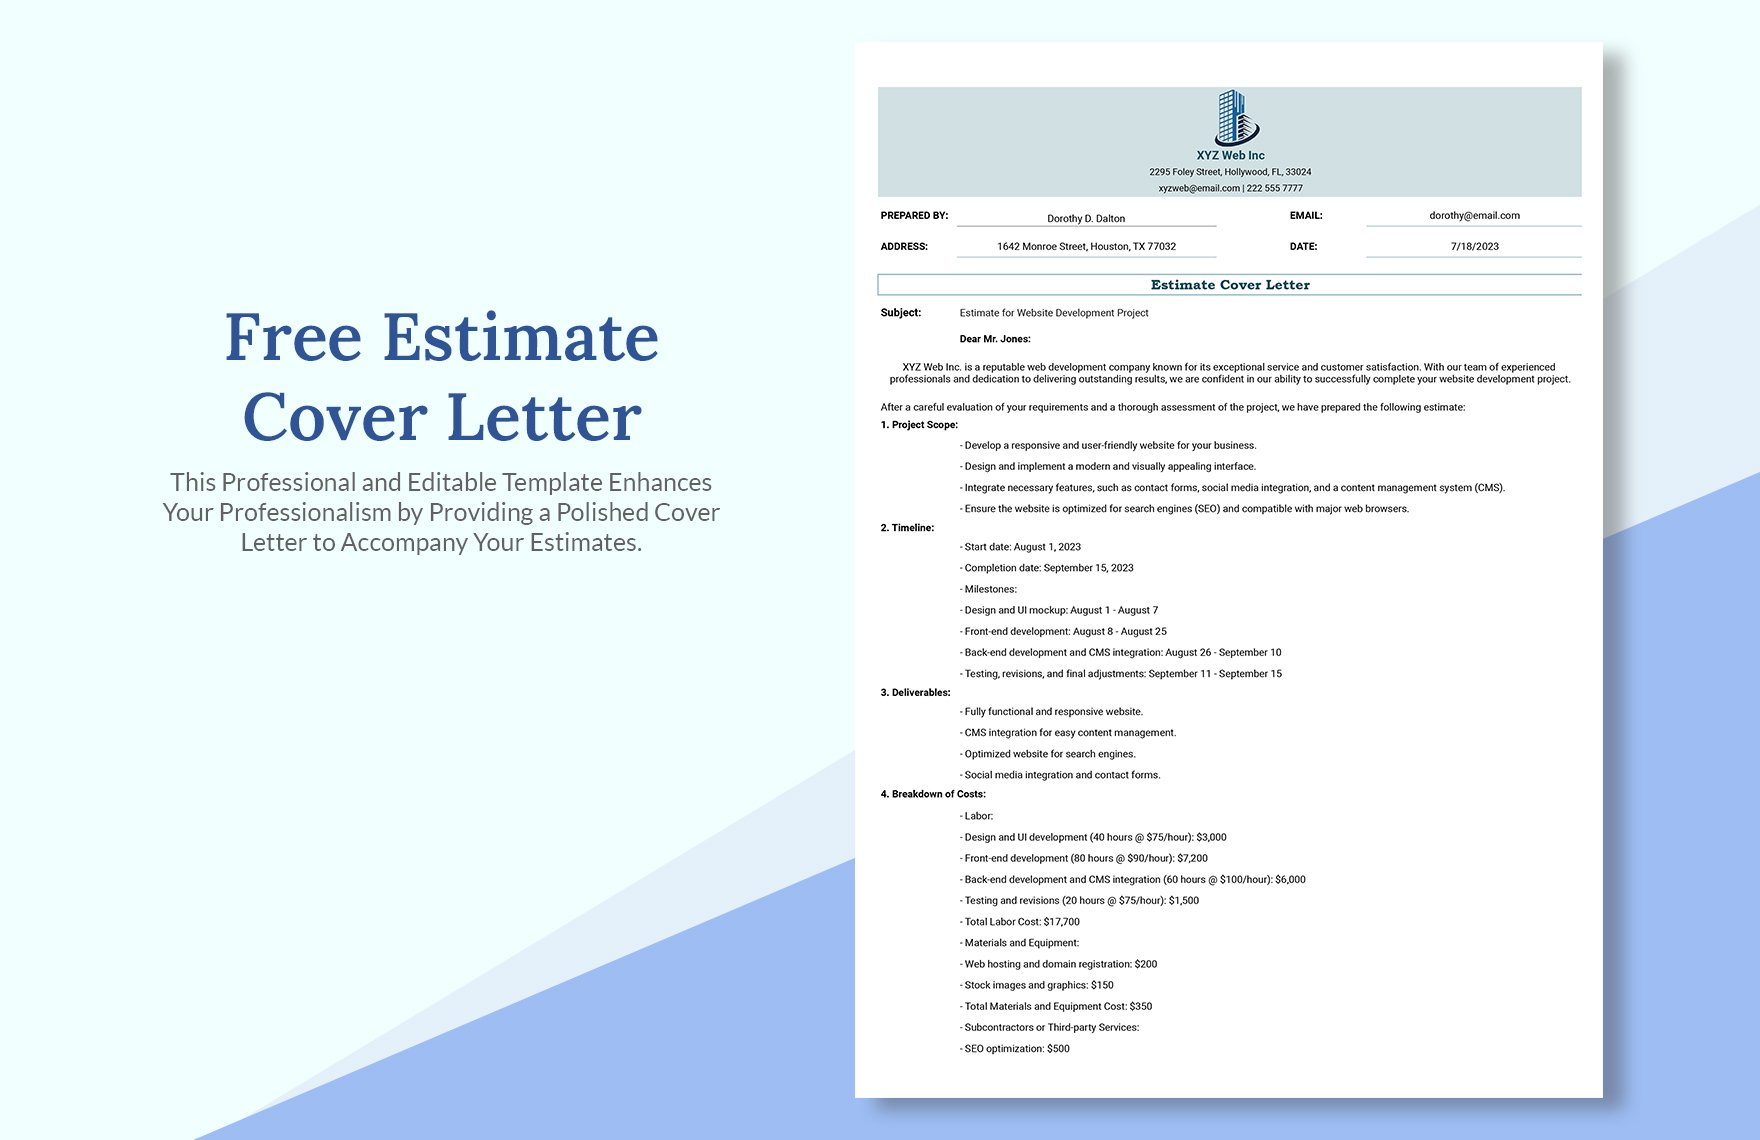 Free Estimate Cover Letter Template